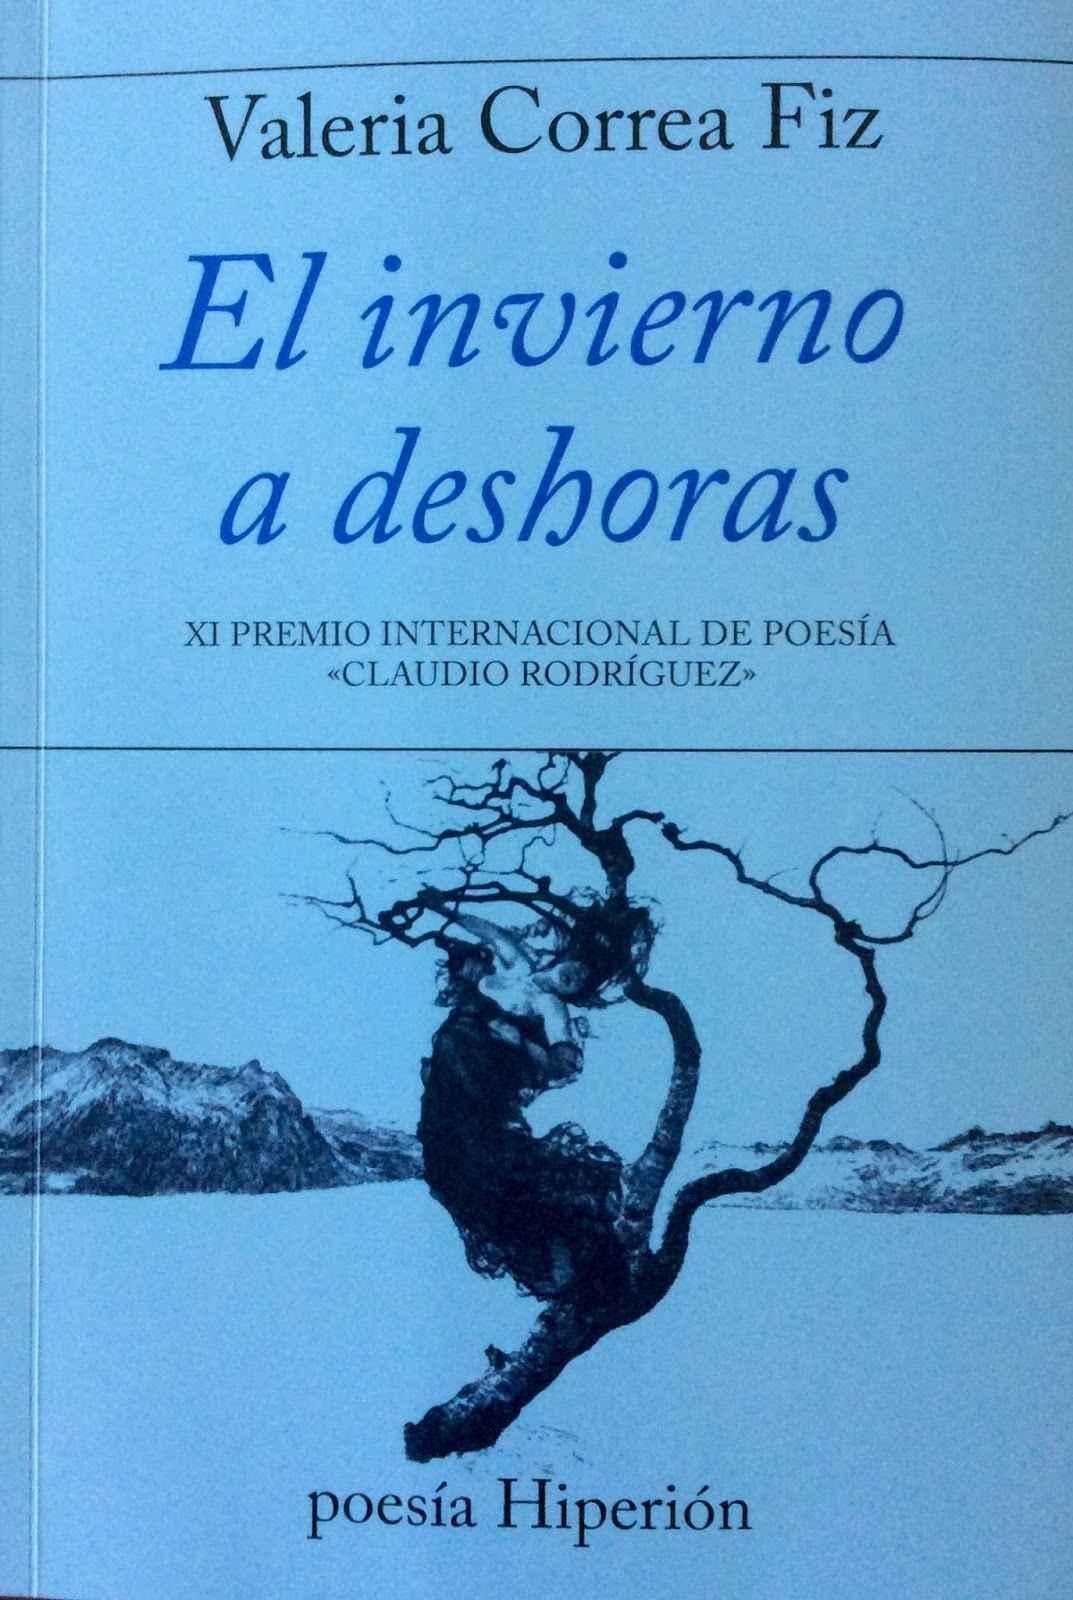 Invierno a Deshoras "XI Premio Internacional de Poesía "Claudio Rodriguez"". 